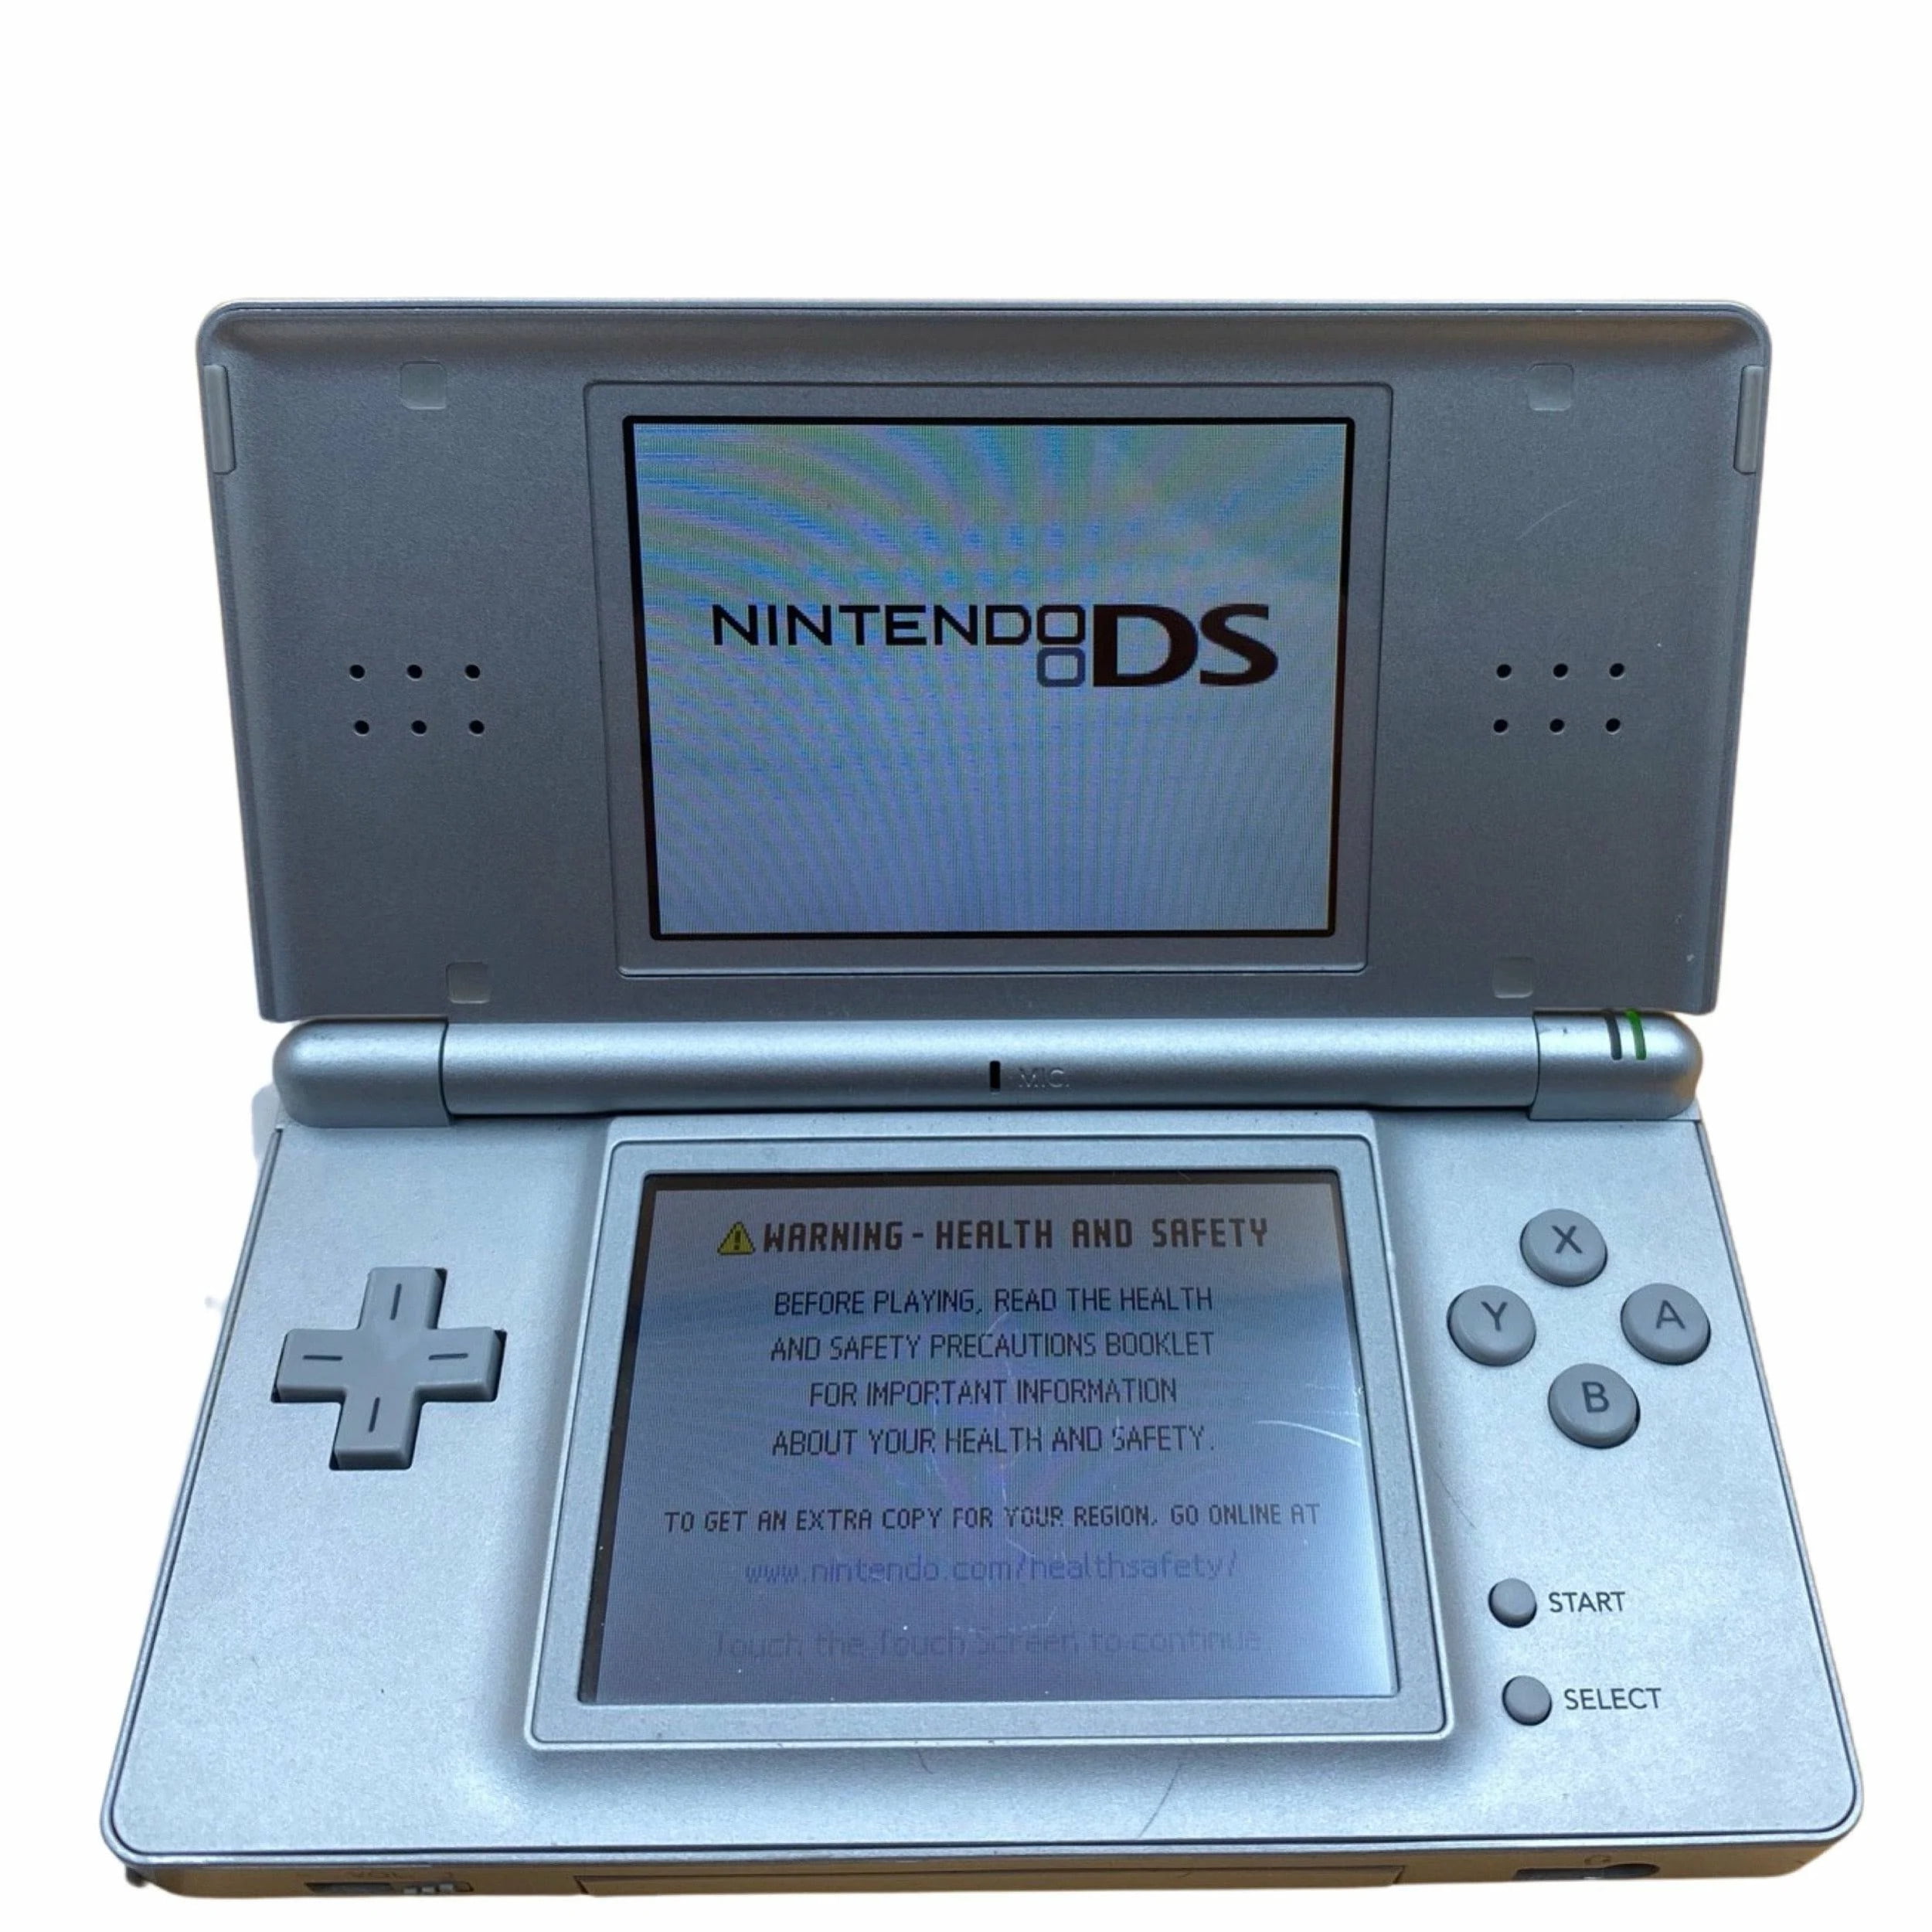 Nintendo DS Lite Portable Gaming Console - Walmart.com